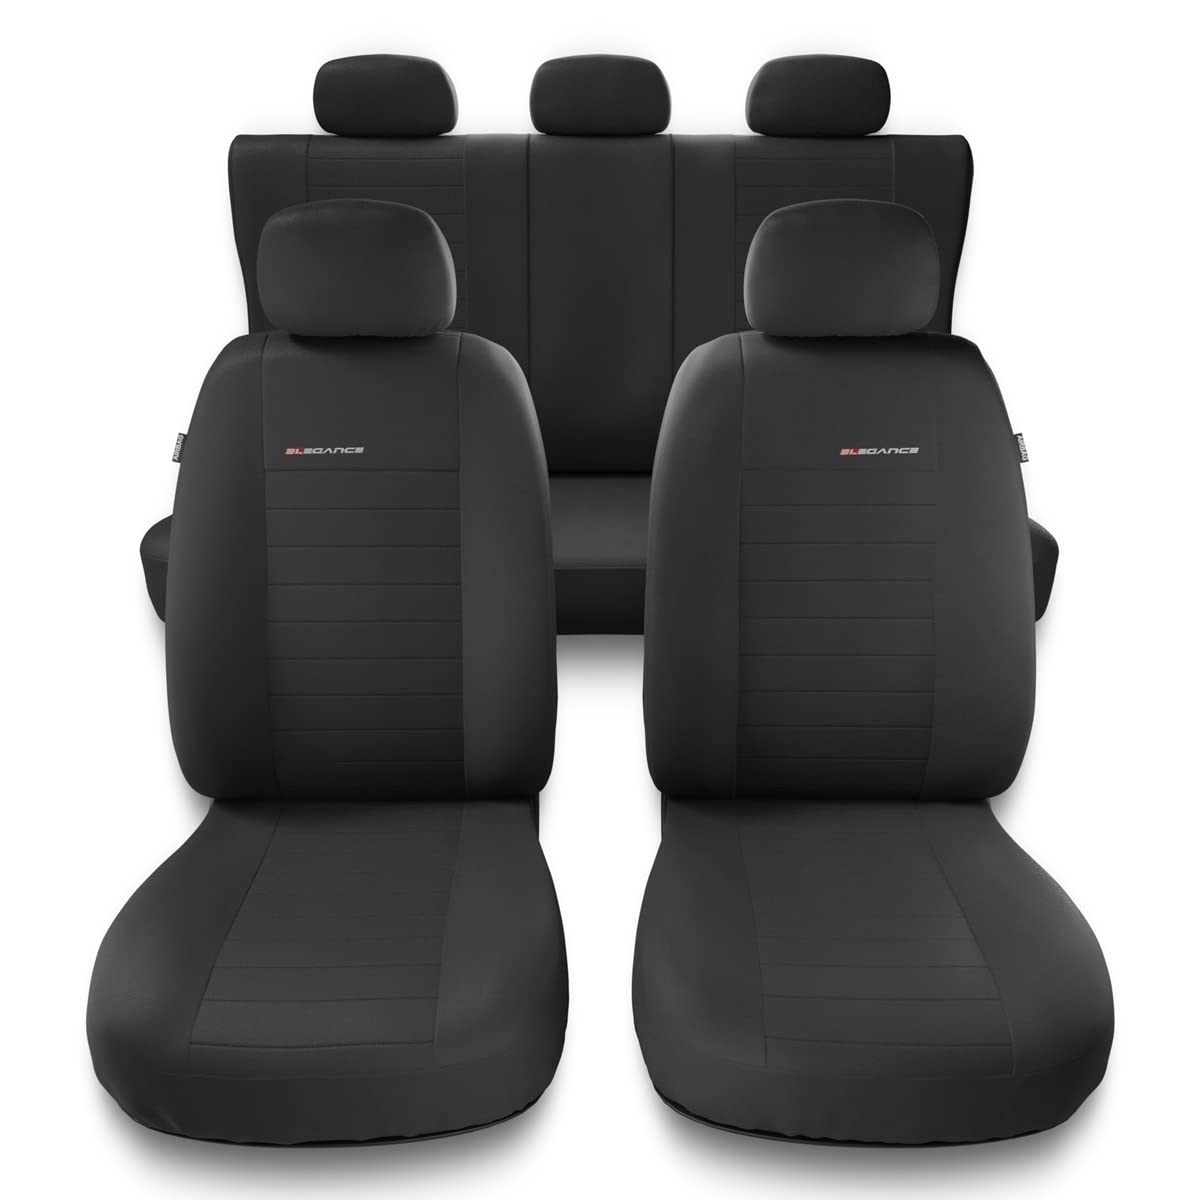 Mossa - Universal Sitzbezüge Auto kompatibel mit Kia Soul I, II (2009-2016) - Autositzbezüge Schonbezüge für Autositze - UNE-4 von Mossa